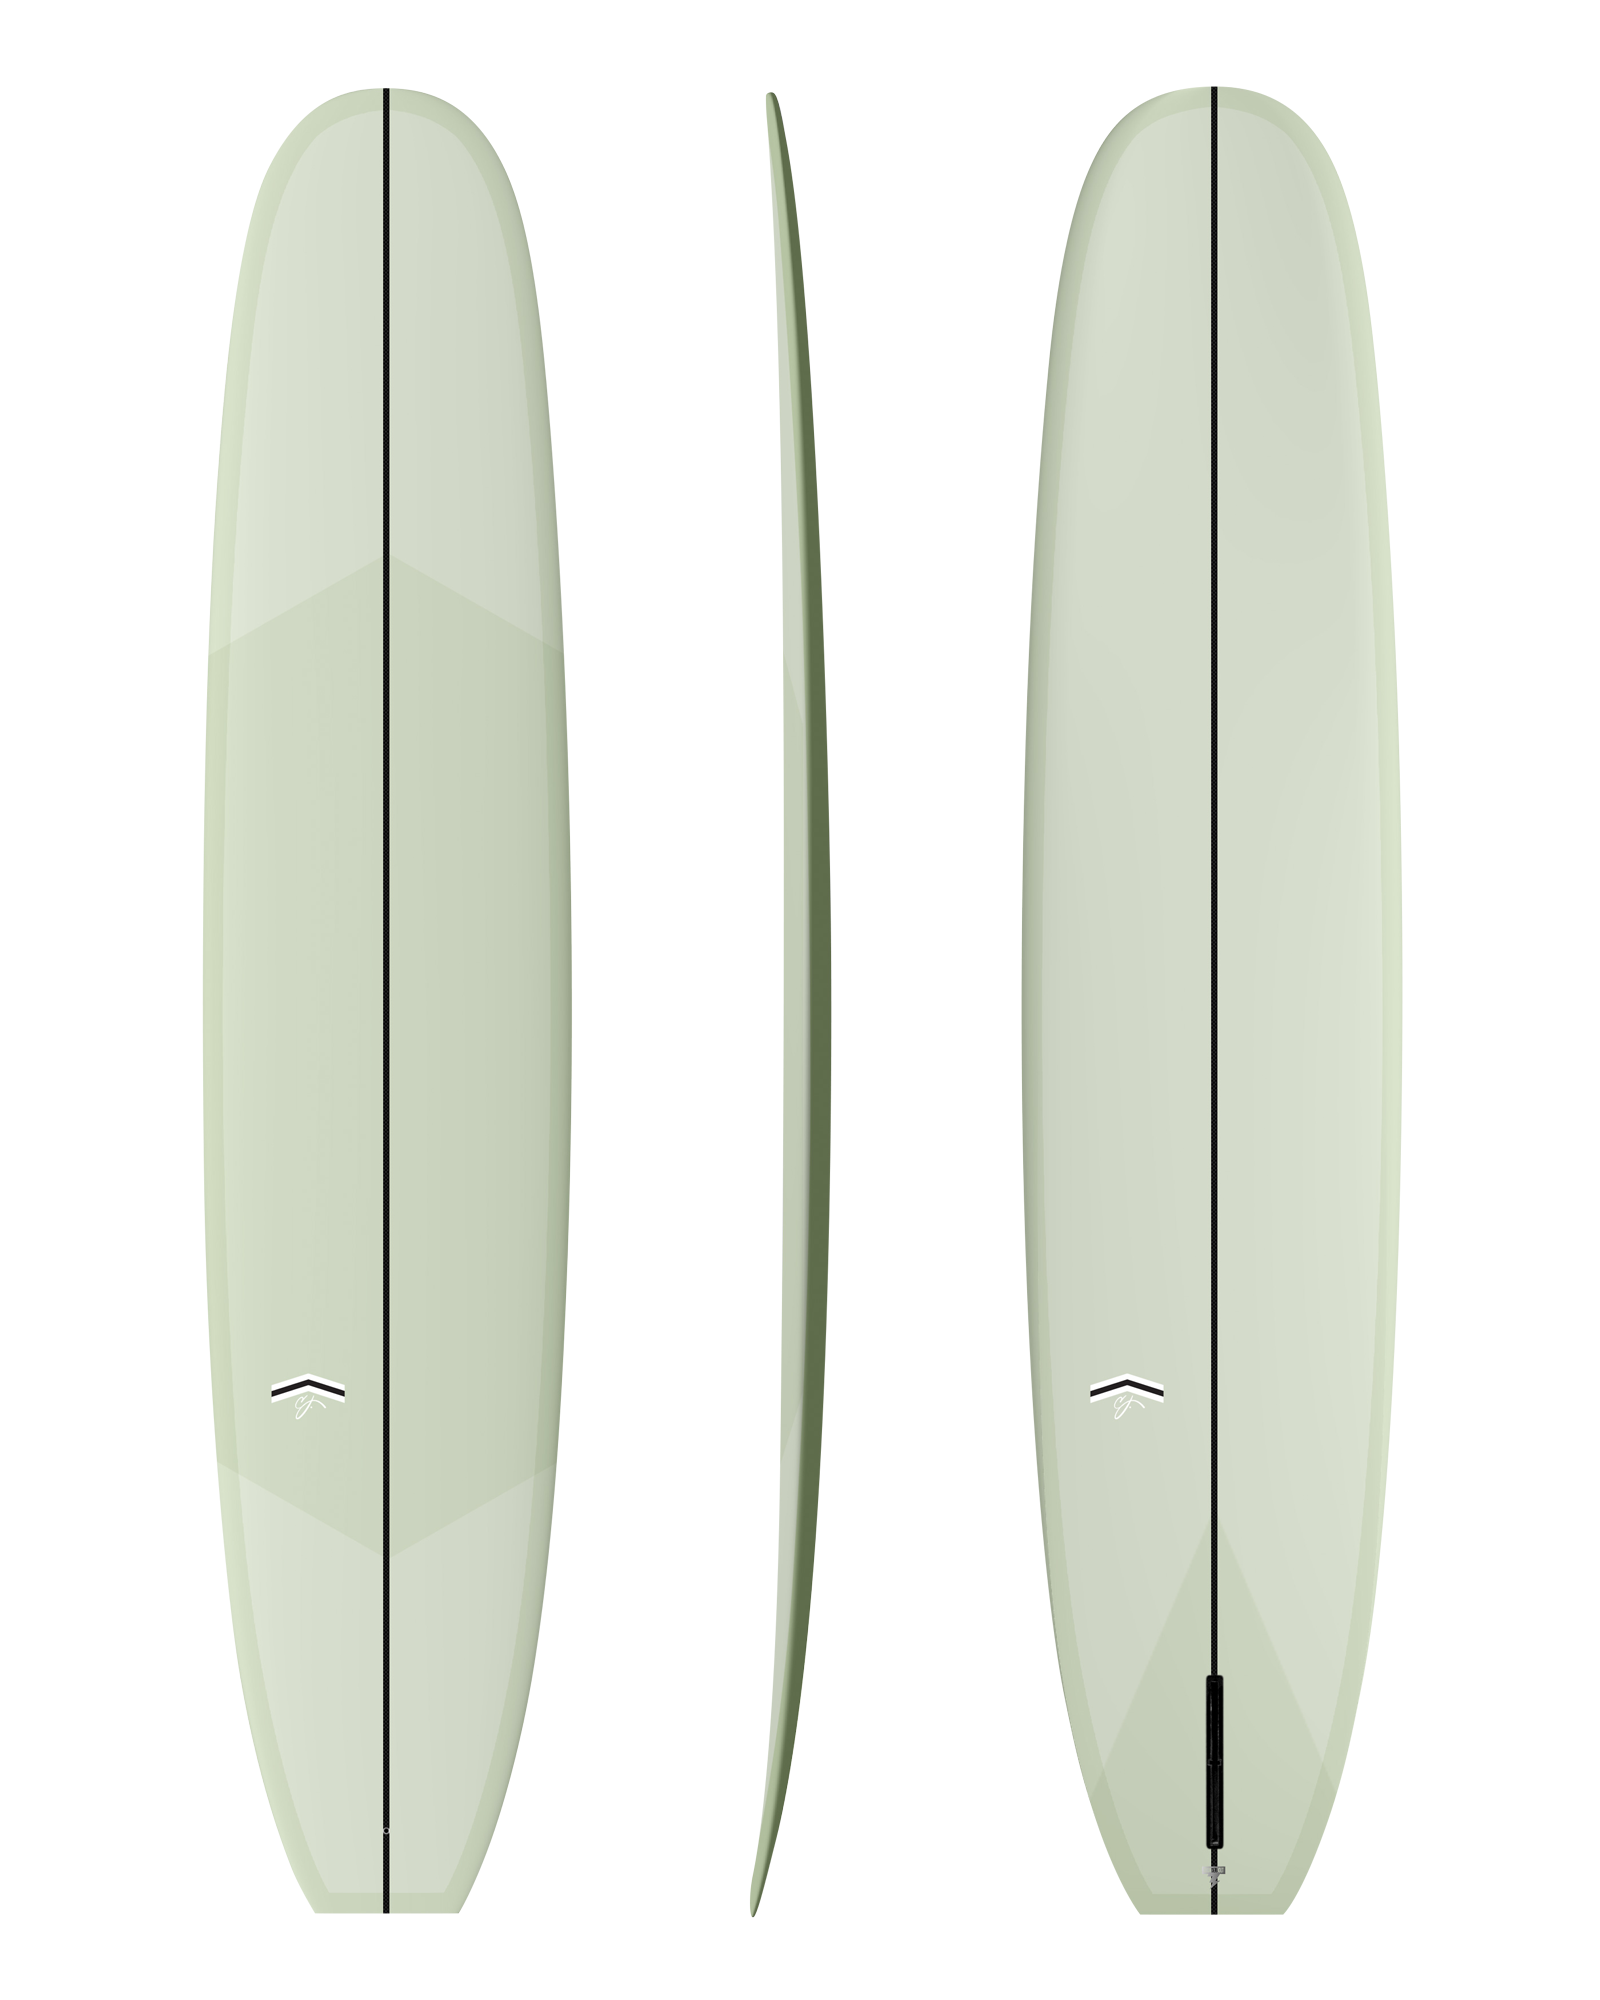 SURFBOARDS - CJ Nelson Designs